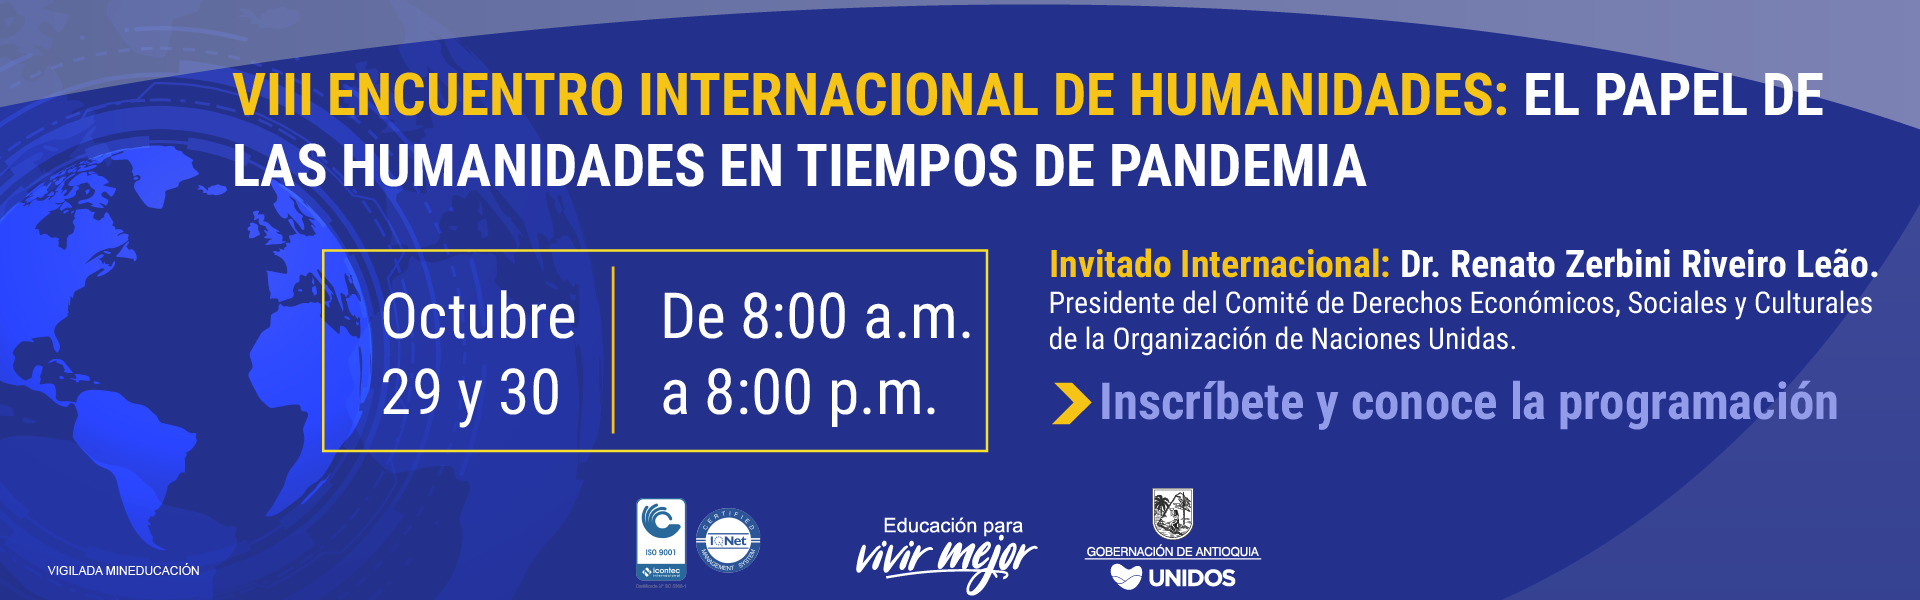 VIII Encuentro Internacional de Humanidades: El Papel de las Humanidades en Tiempos de Pandemia
Jueves 29 y viernes 30 de octubre de 2020